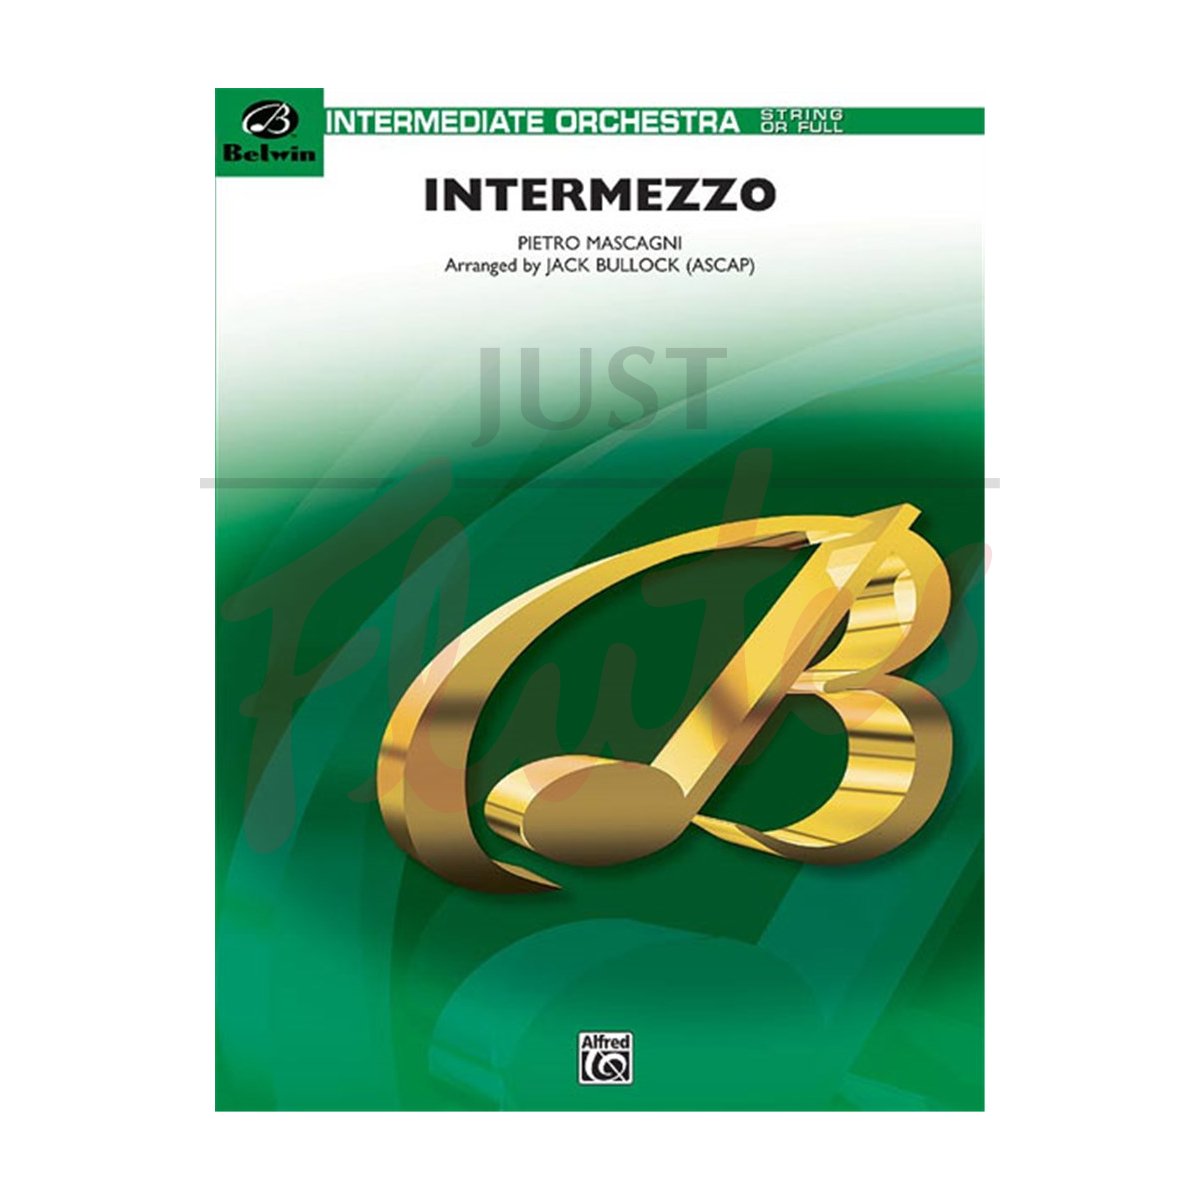 Intermezzo from Cavalleria Rusticana for Orchestra